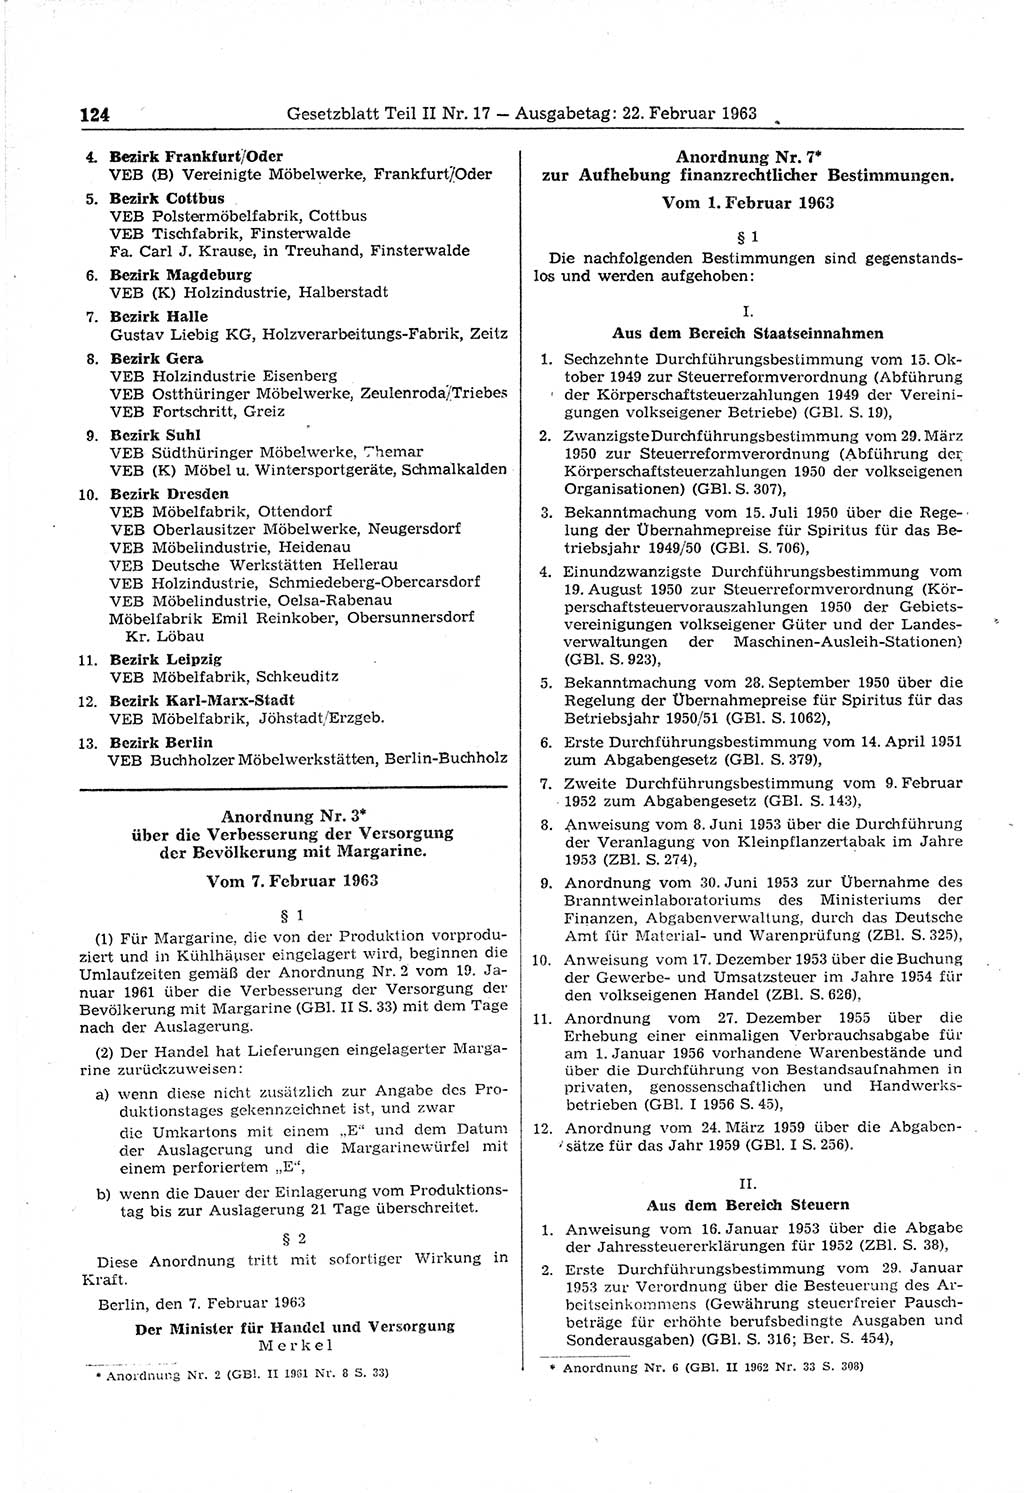 Gesetzblatt (GBl.) der Deutschen Demokratischen Republik (DDR) Teil ⅠⅠ 1963, Seite 124 (GBl. DDR ⅠⅠ 1963, S. 124)